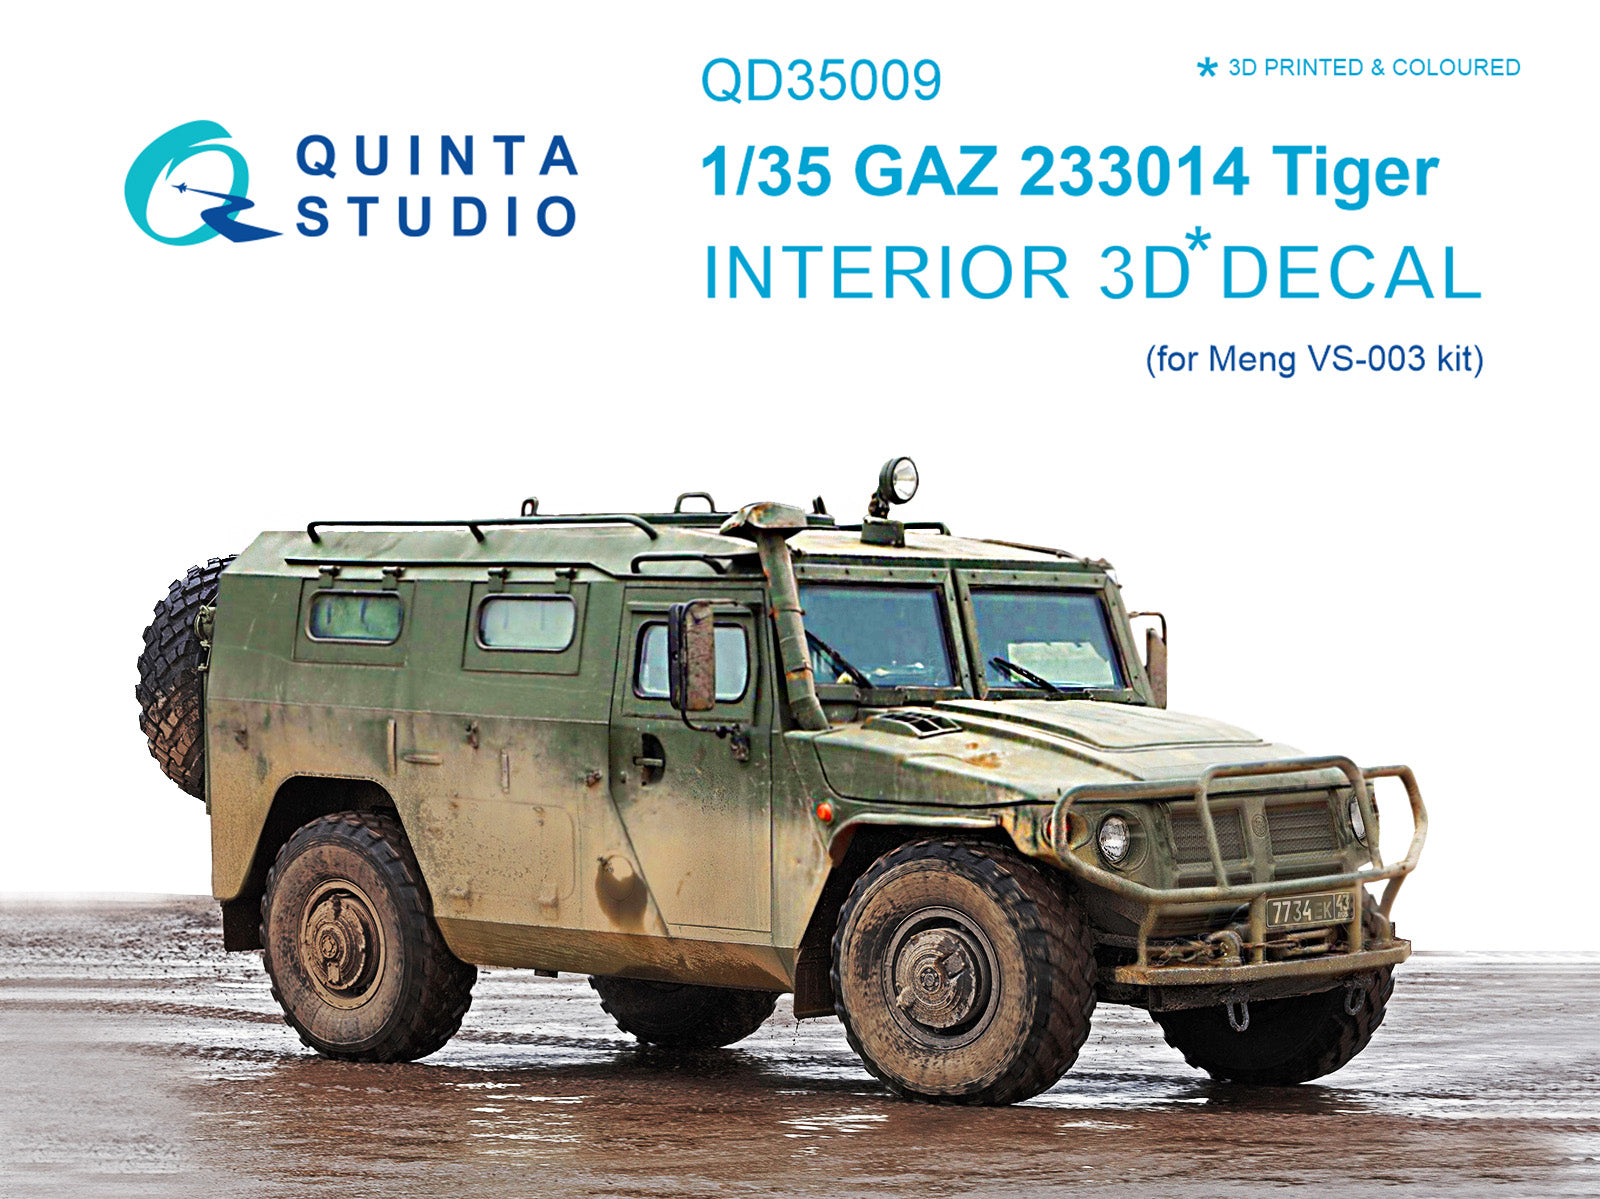 Quinta Studio - 1/35 GAZ Tiger Family QD35009 for Meng kits